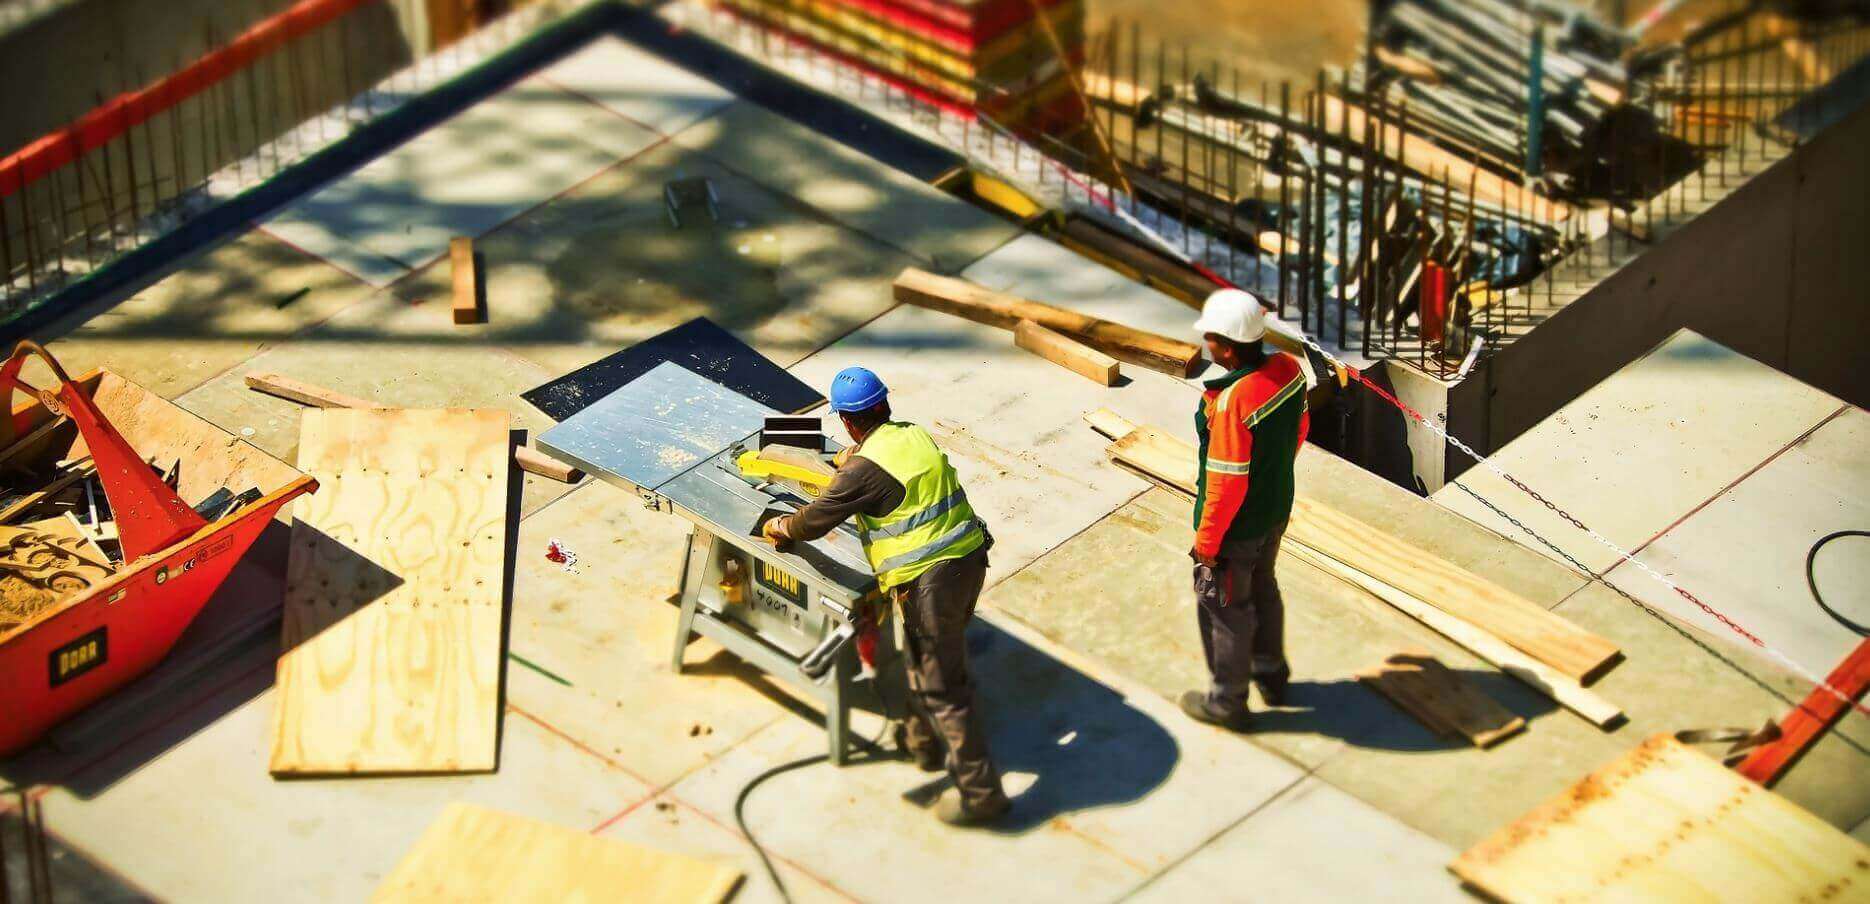 12-Stunden-Tag: Höheres Unfall-Risiko, weniger Erholung – für Bauarbeiter lebensgefährlich